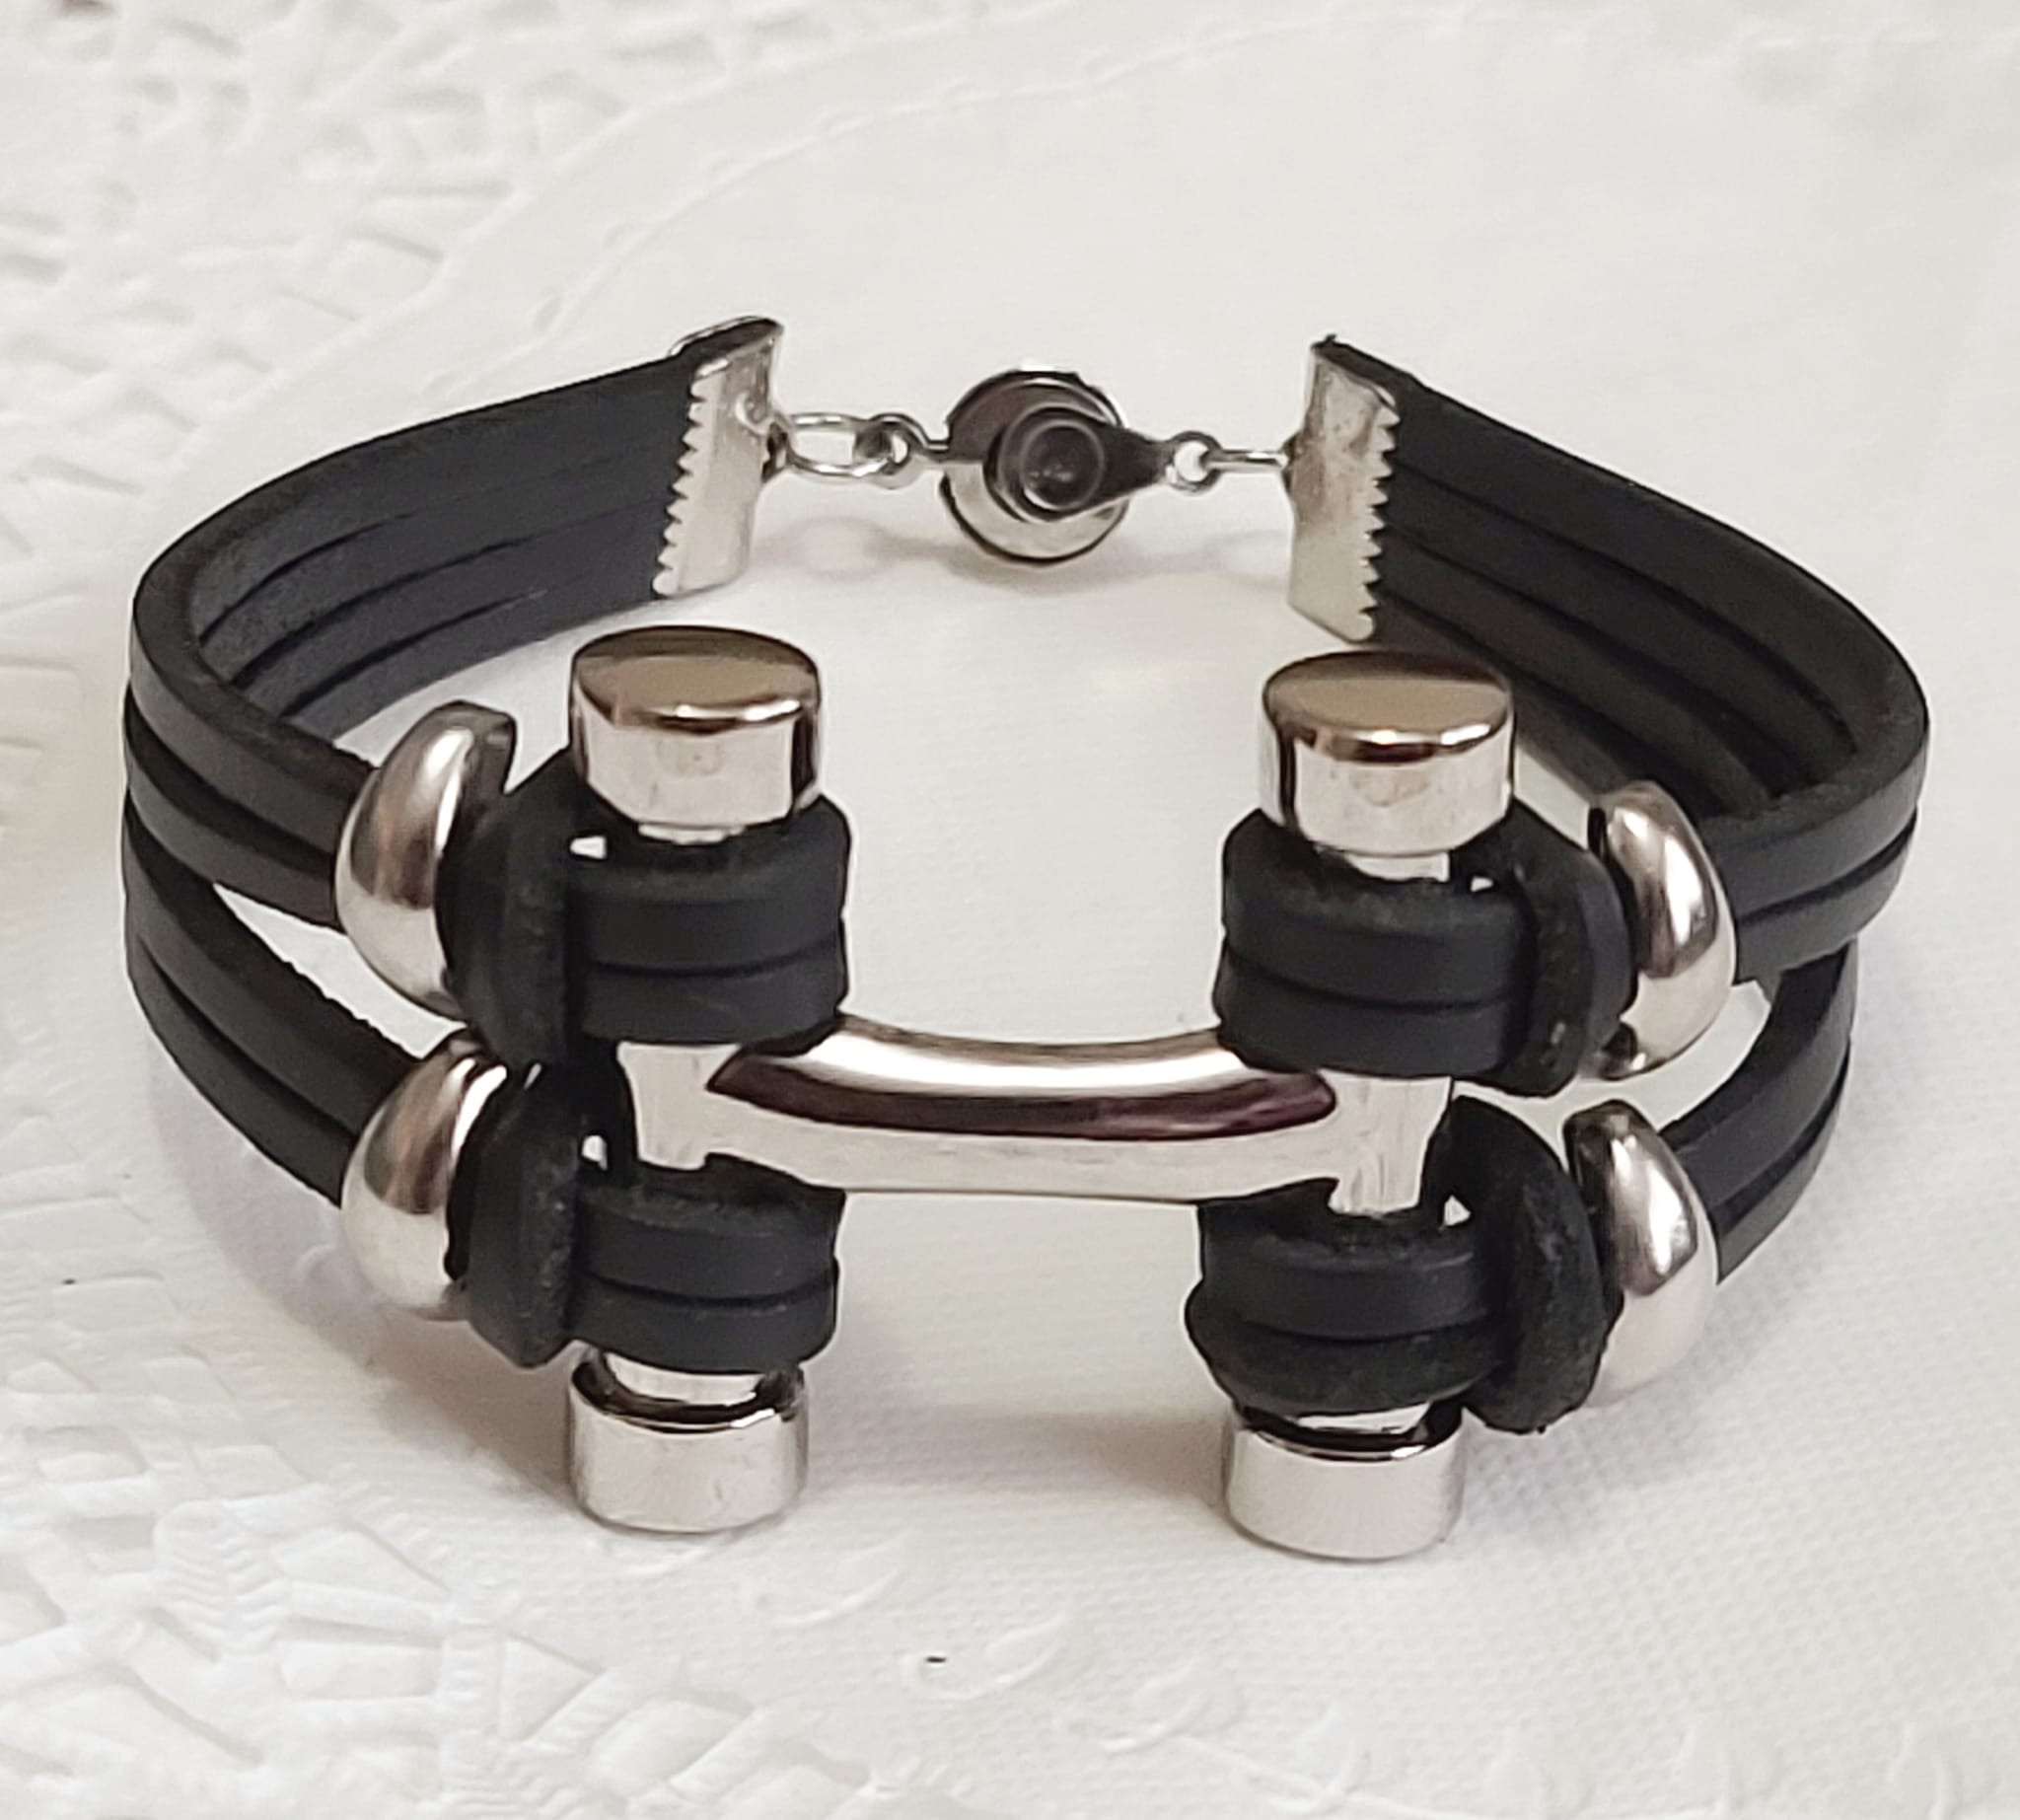 Modernist bracelet handcrafted bracelet, black leather and stainless steel 8.5" bracelet